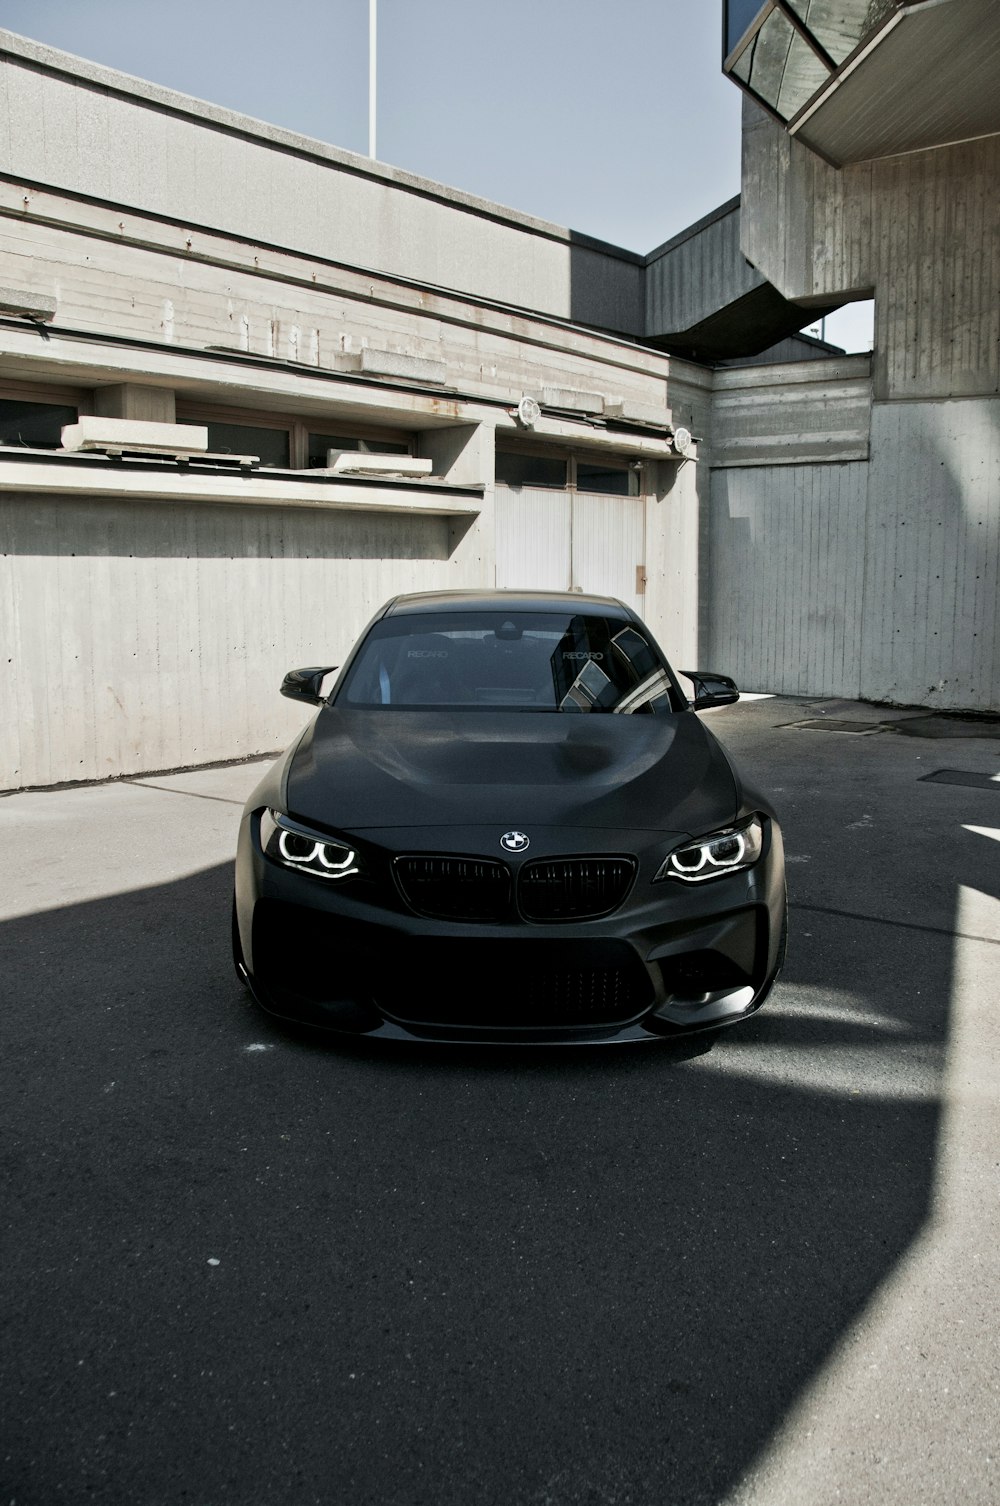 낮 동안 회색 콘크리트 바닥에 주차된 검은색 BMW 자동차